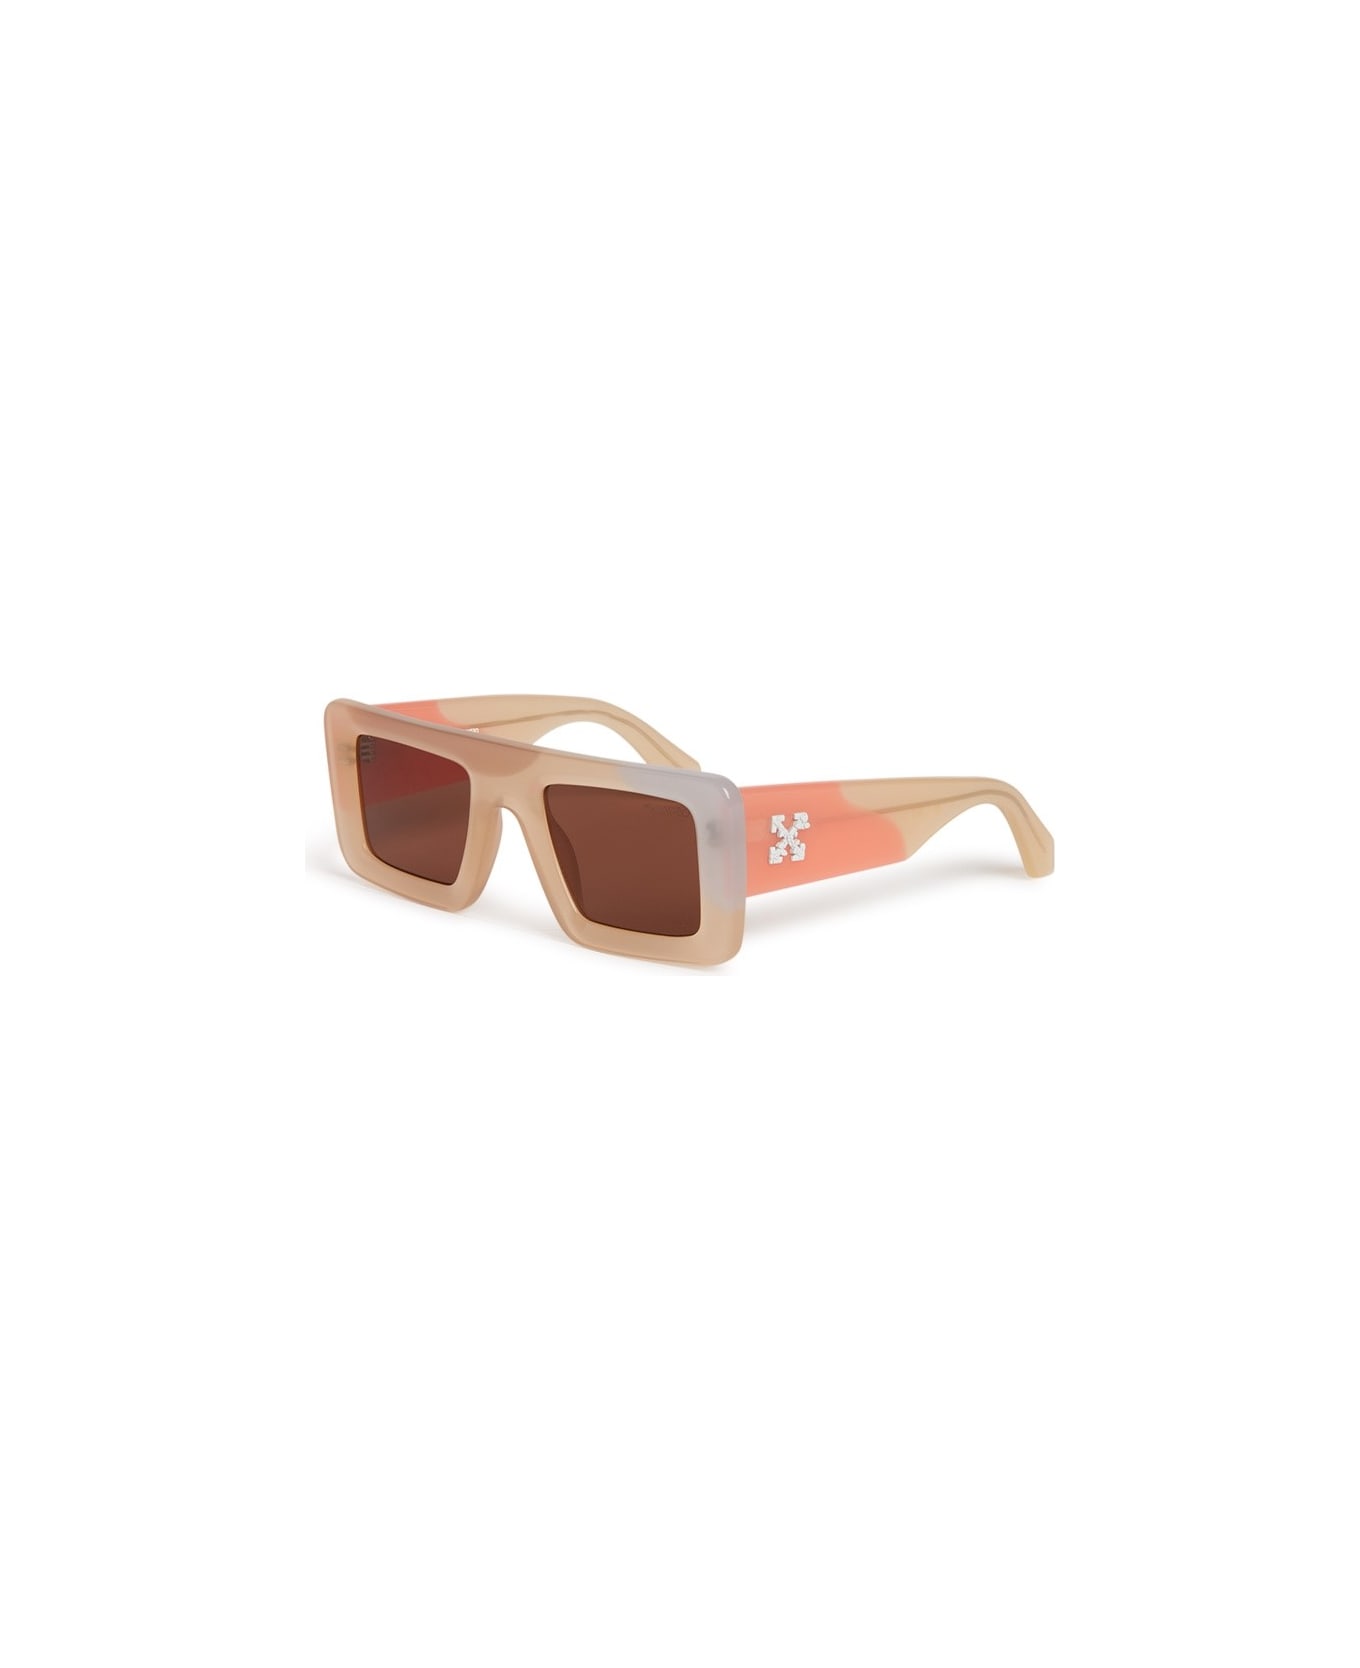 Off-White Seattle Sunglasses Sunglasses - Multicolor